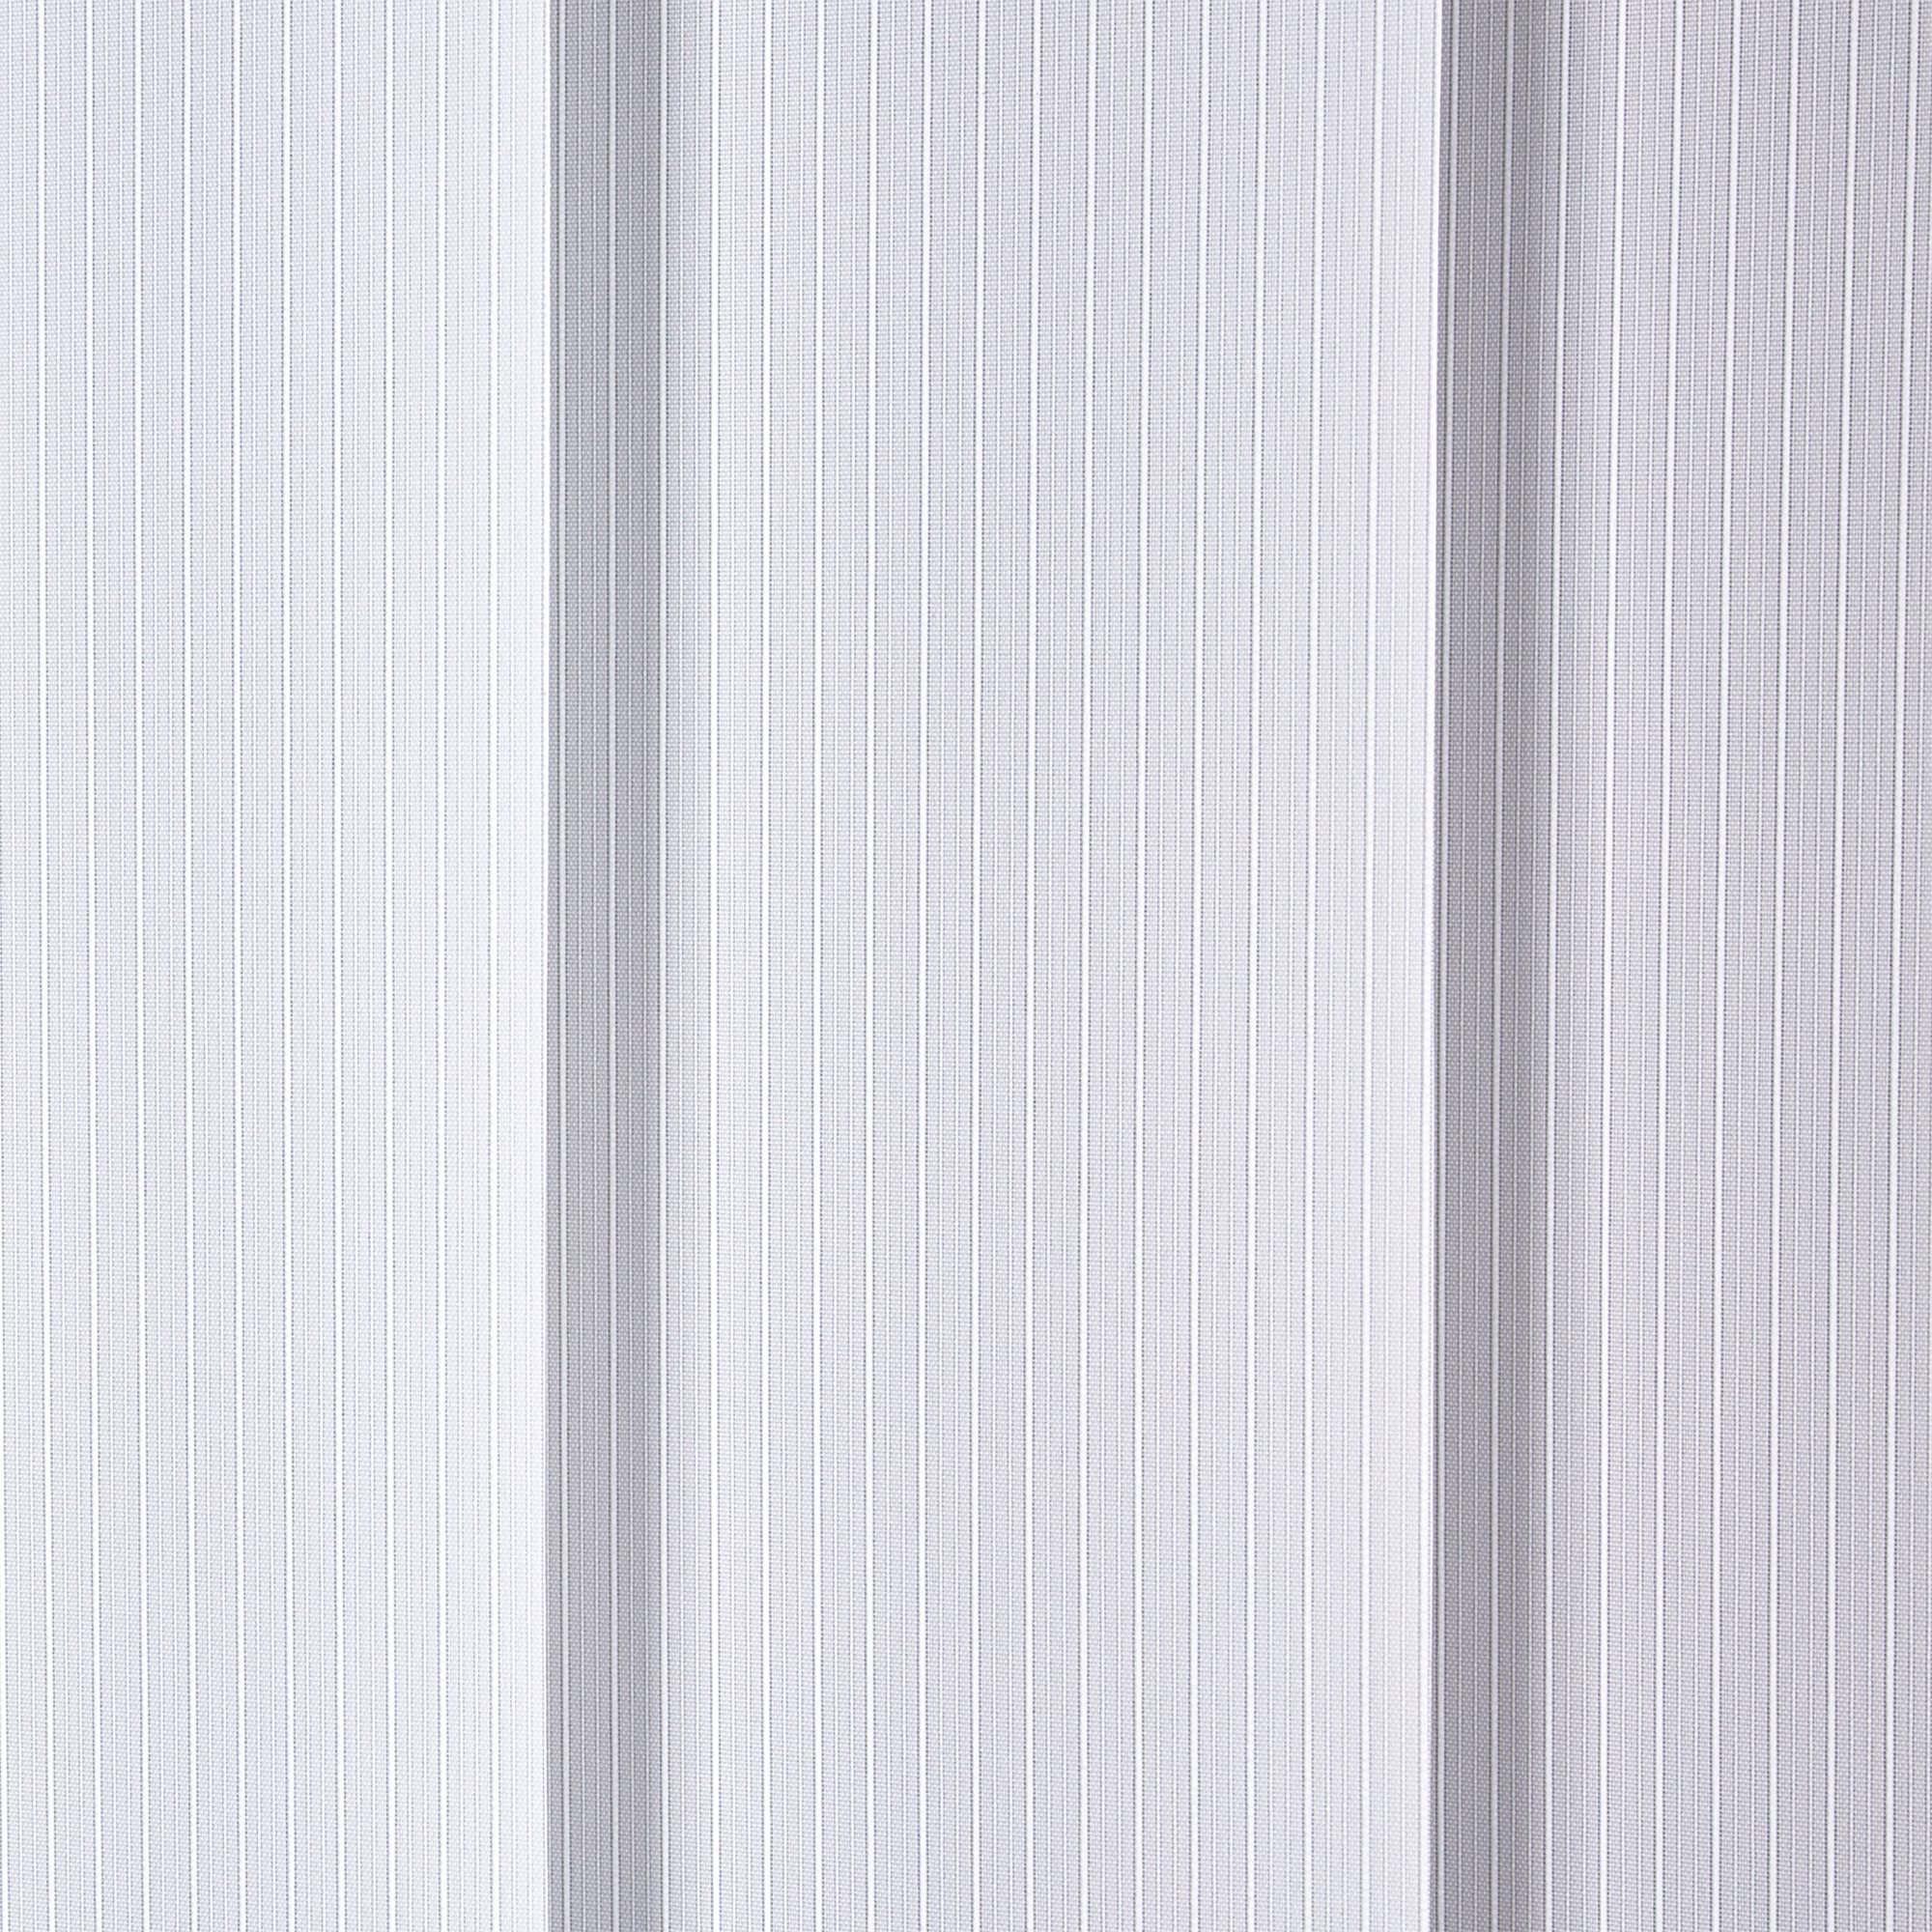 Lamellenvorhang weiß 100 x 260 cm